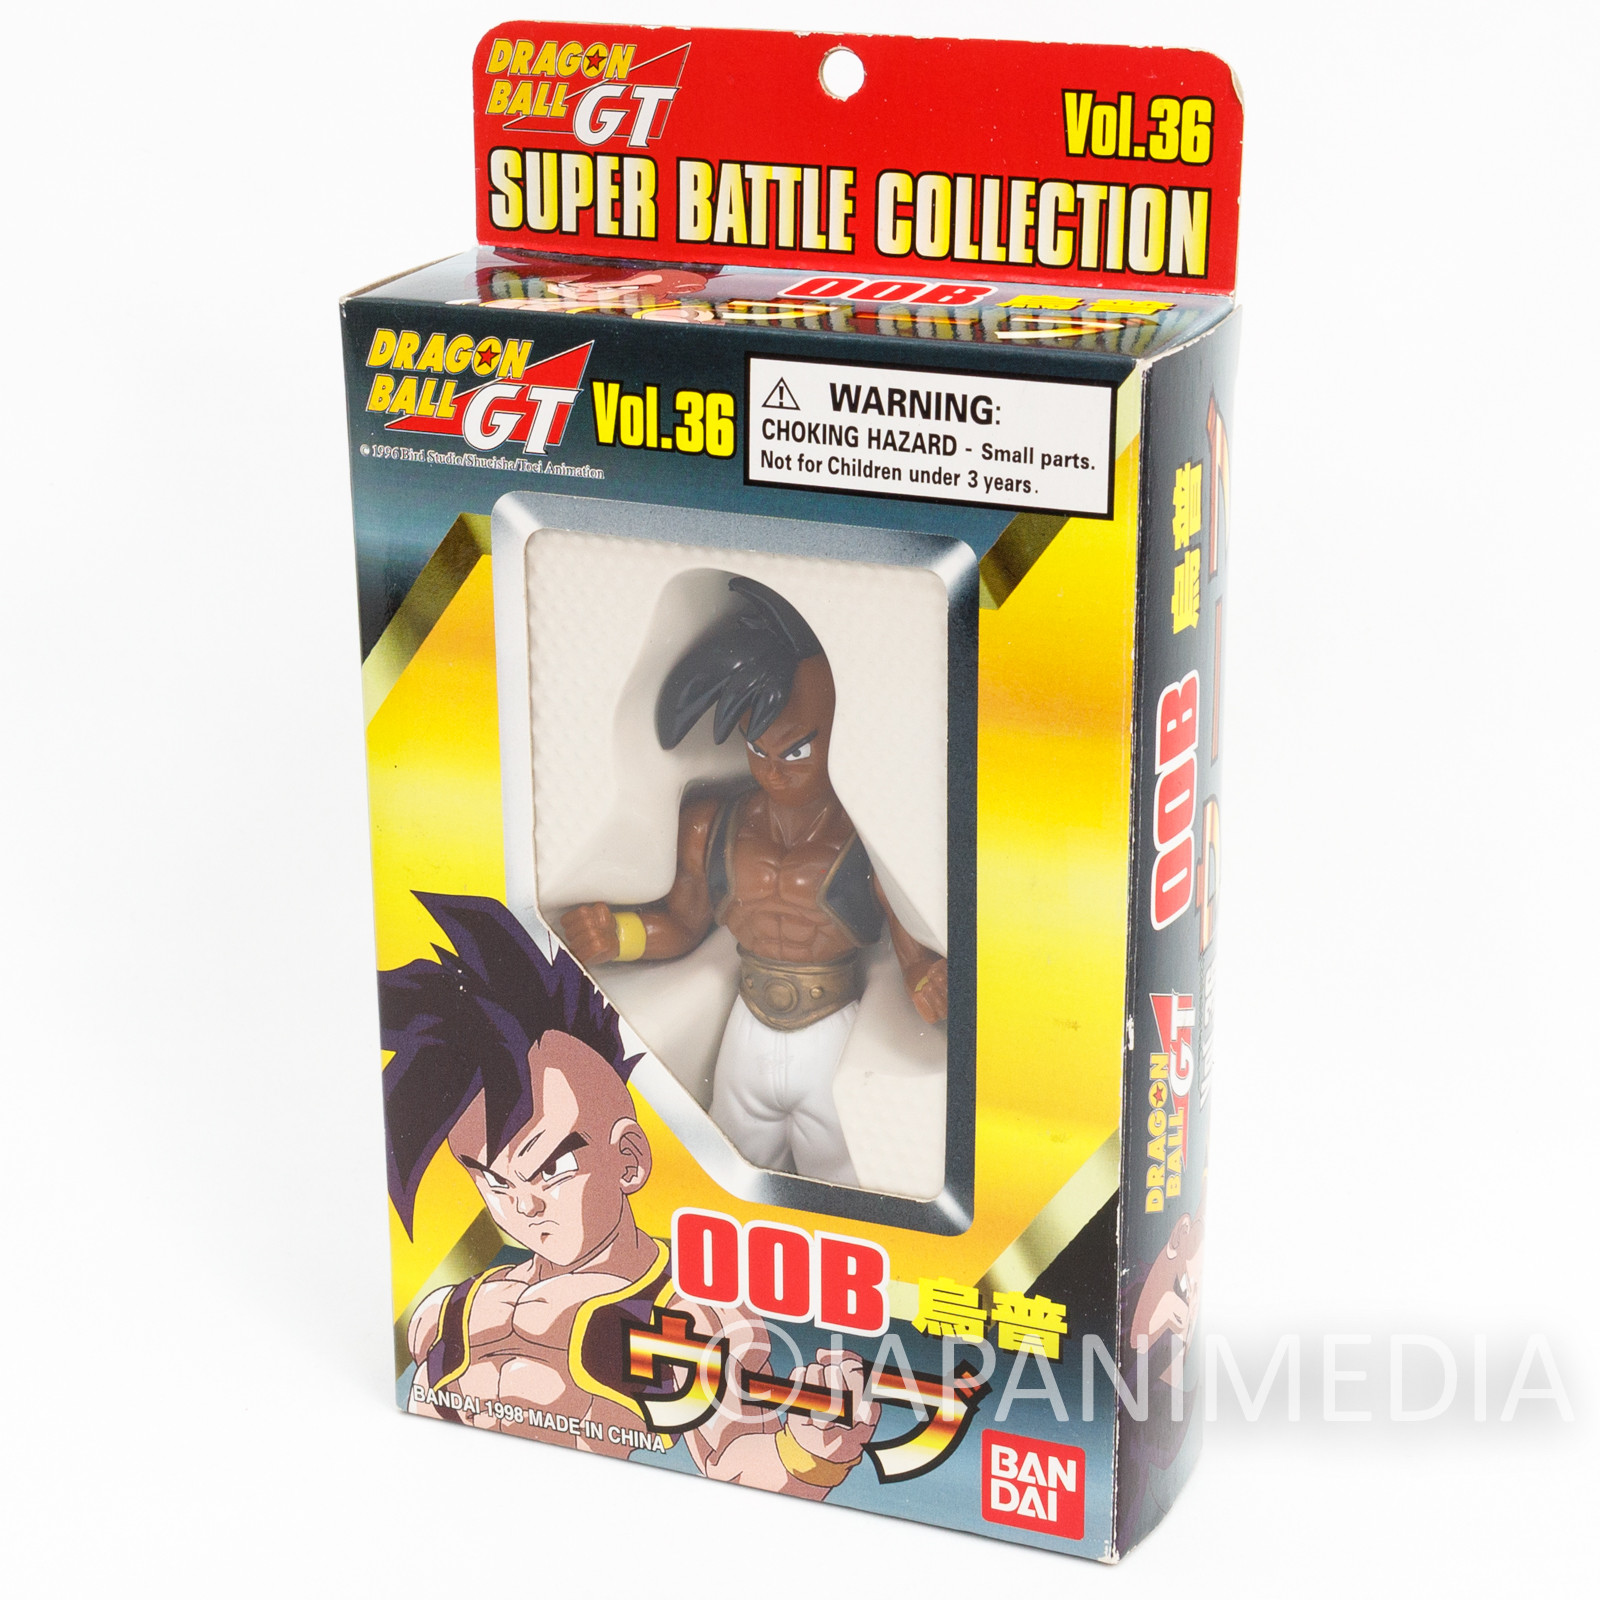 Dragonball GT Super Battle Collection Vol. 36 Uub Oob